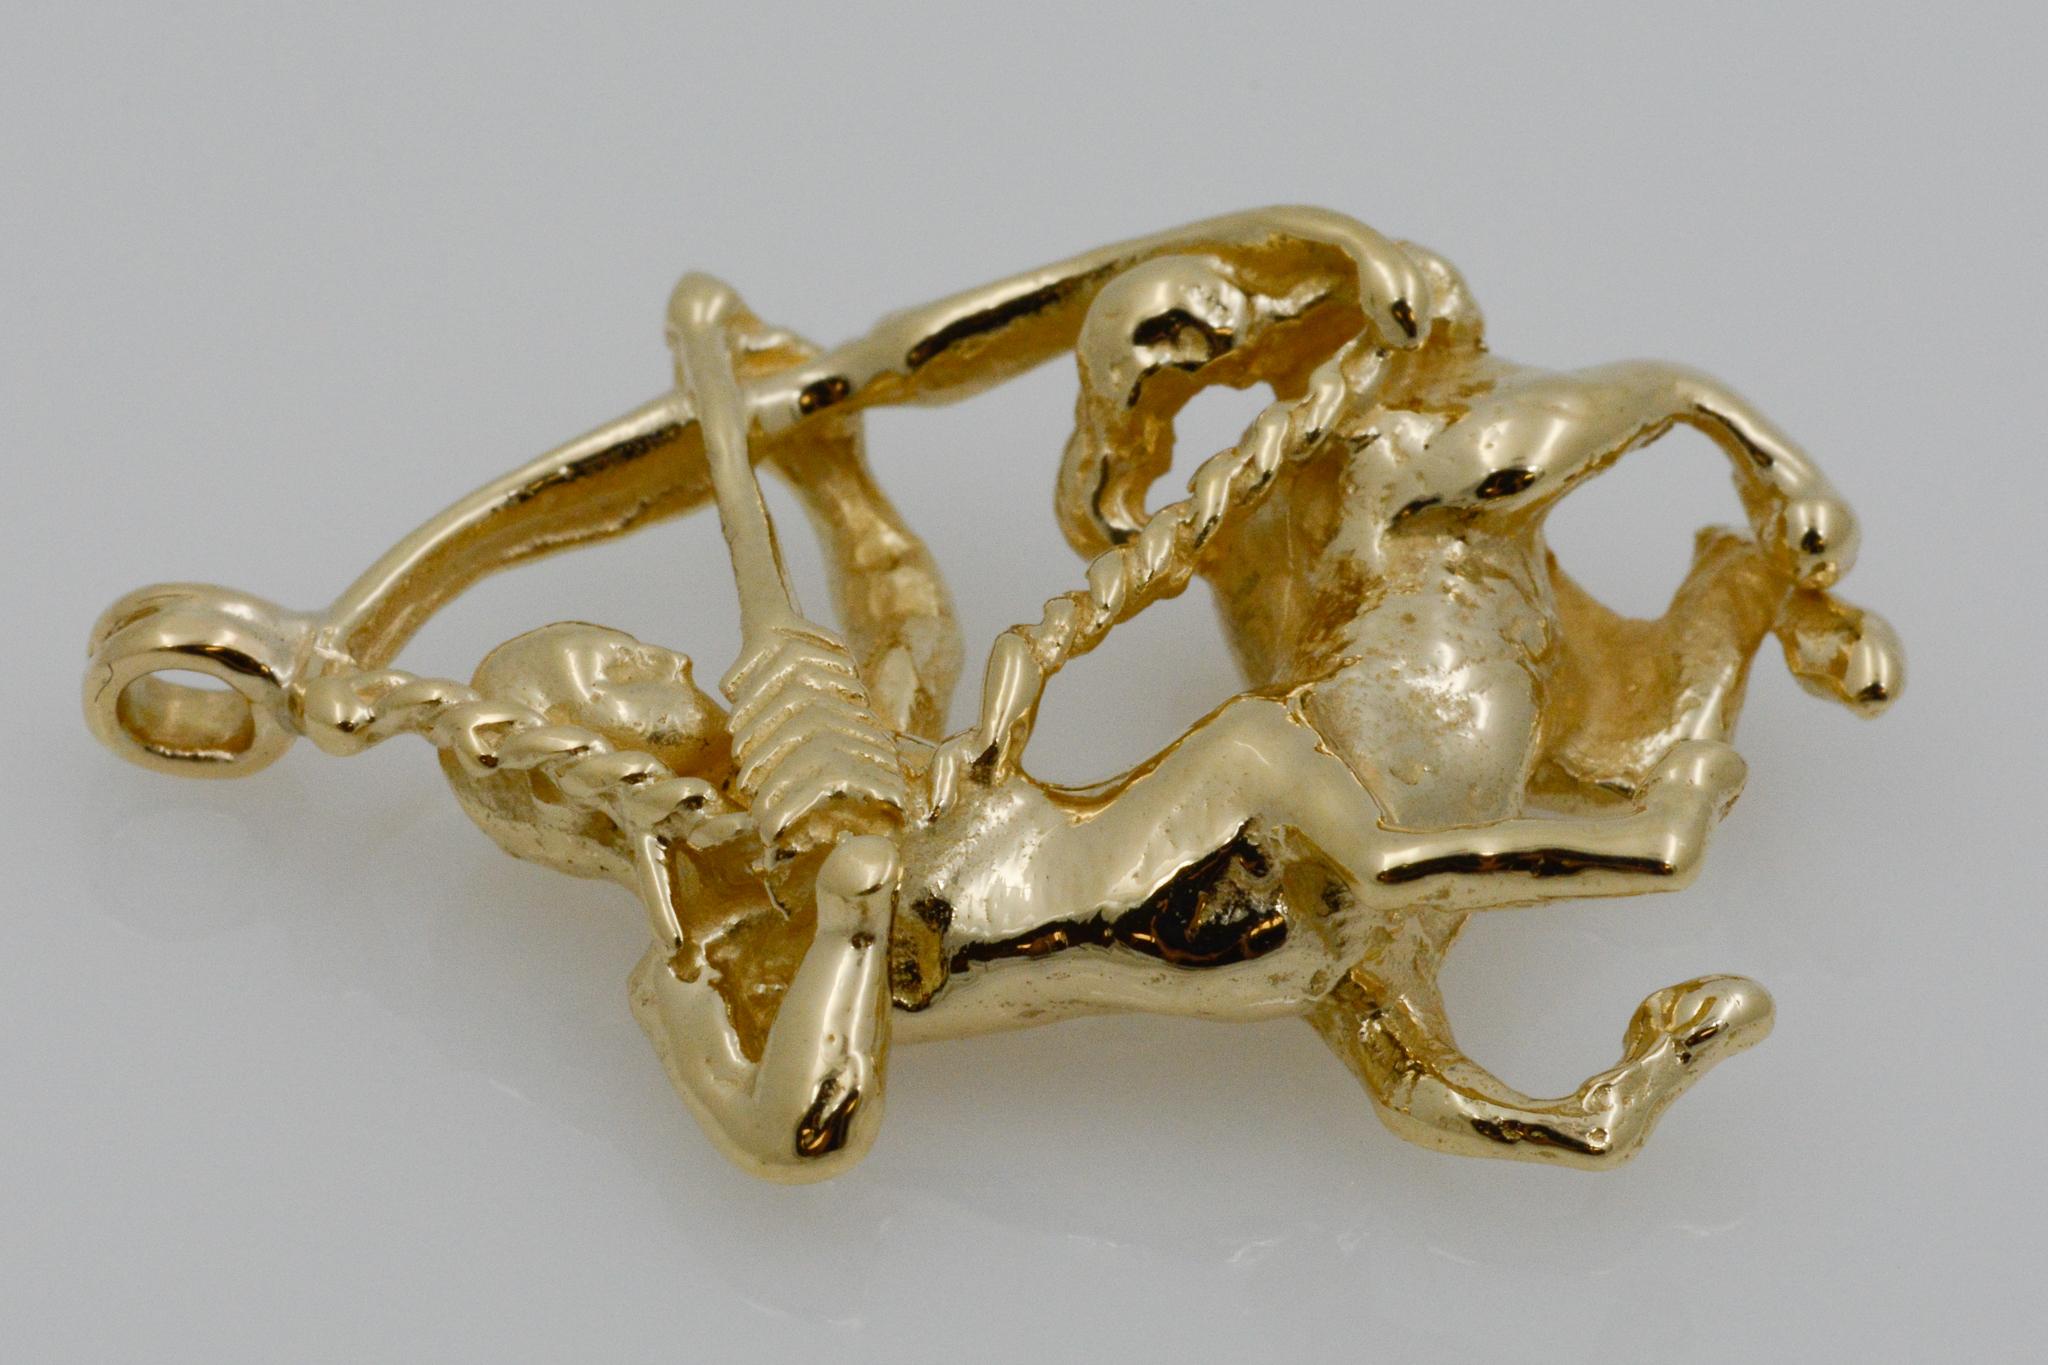 centaur gold collection